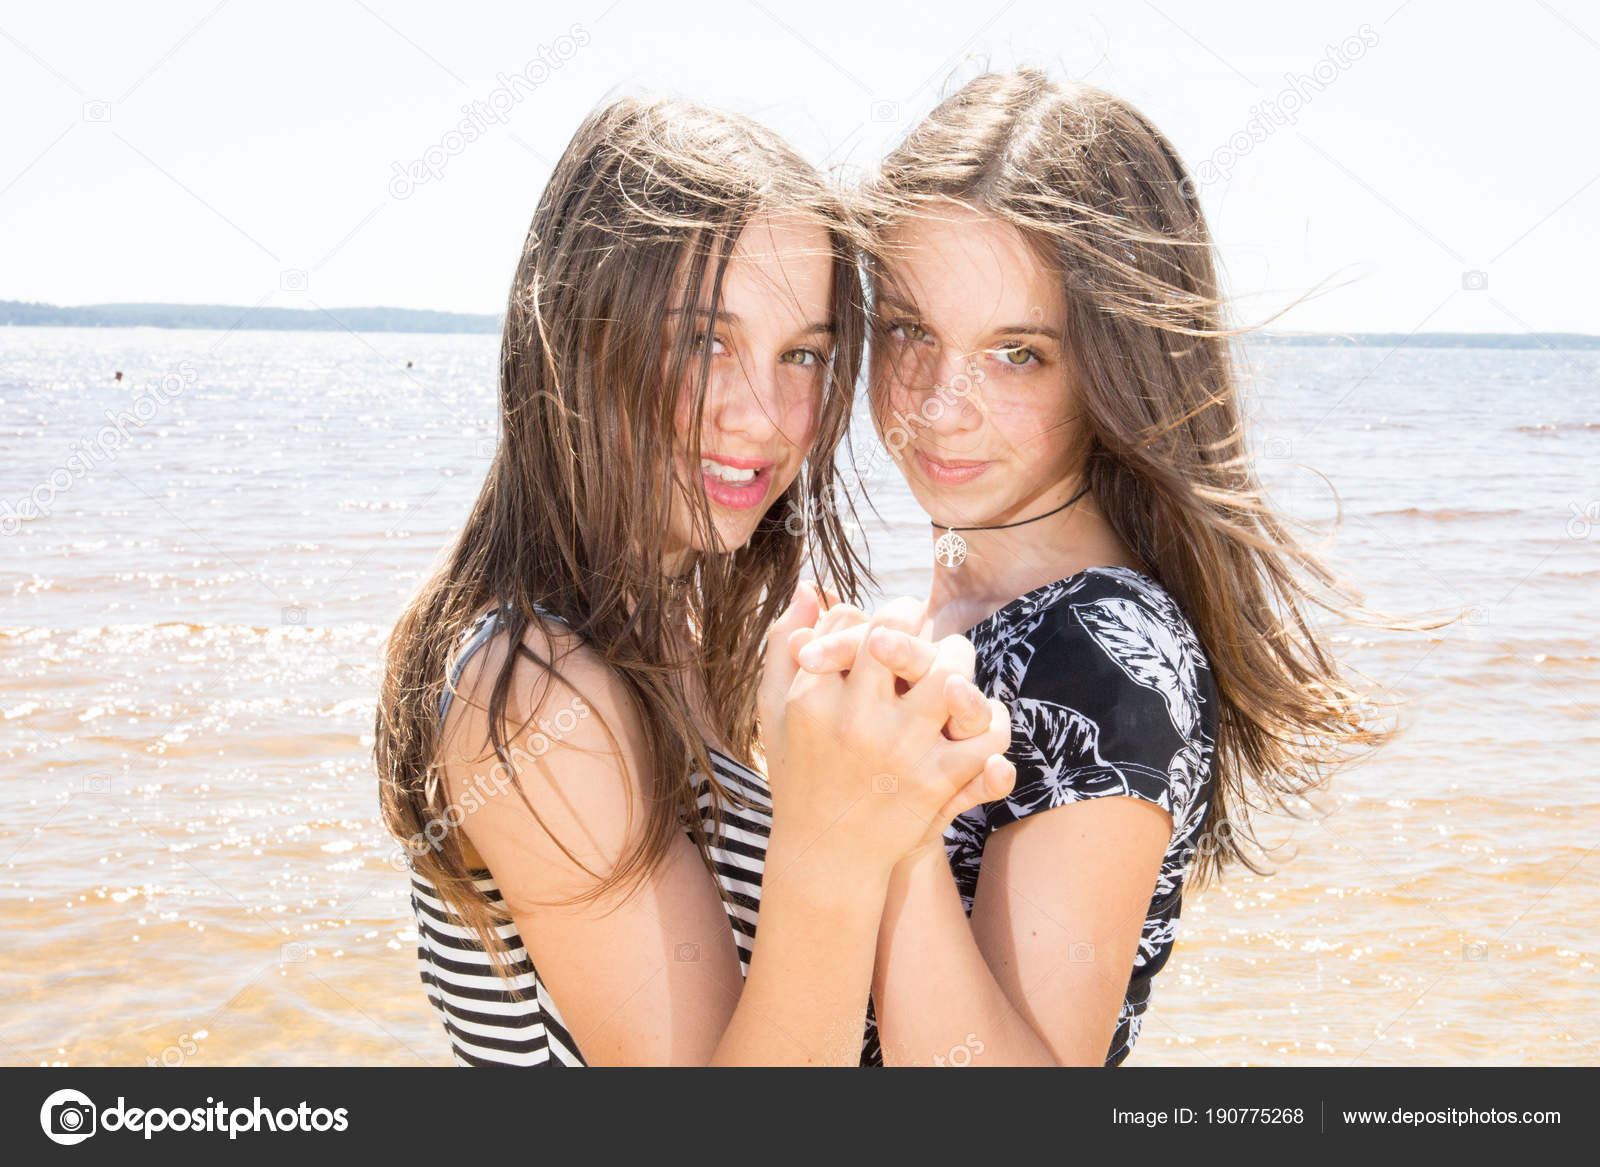 Сестры близняшки для тебя разделись на пляже-мечта парней